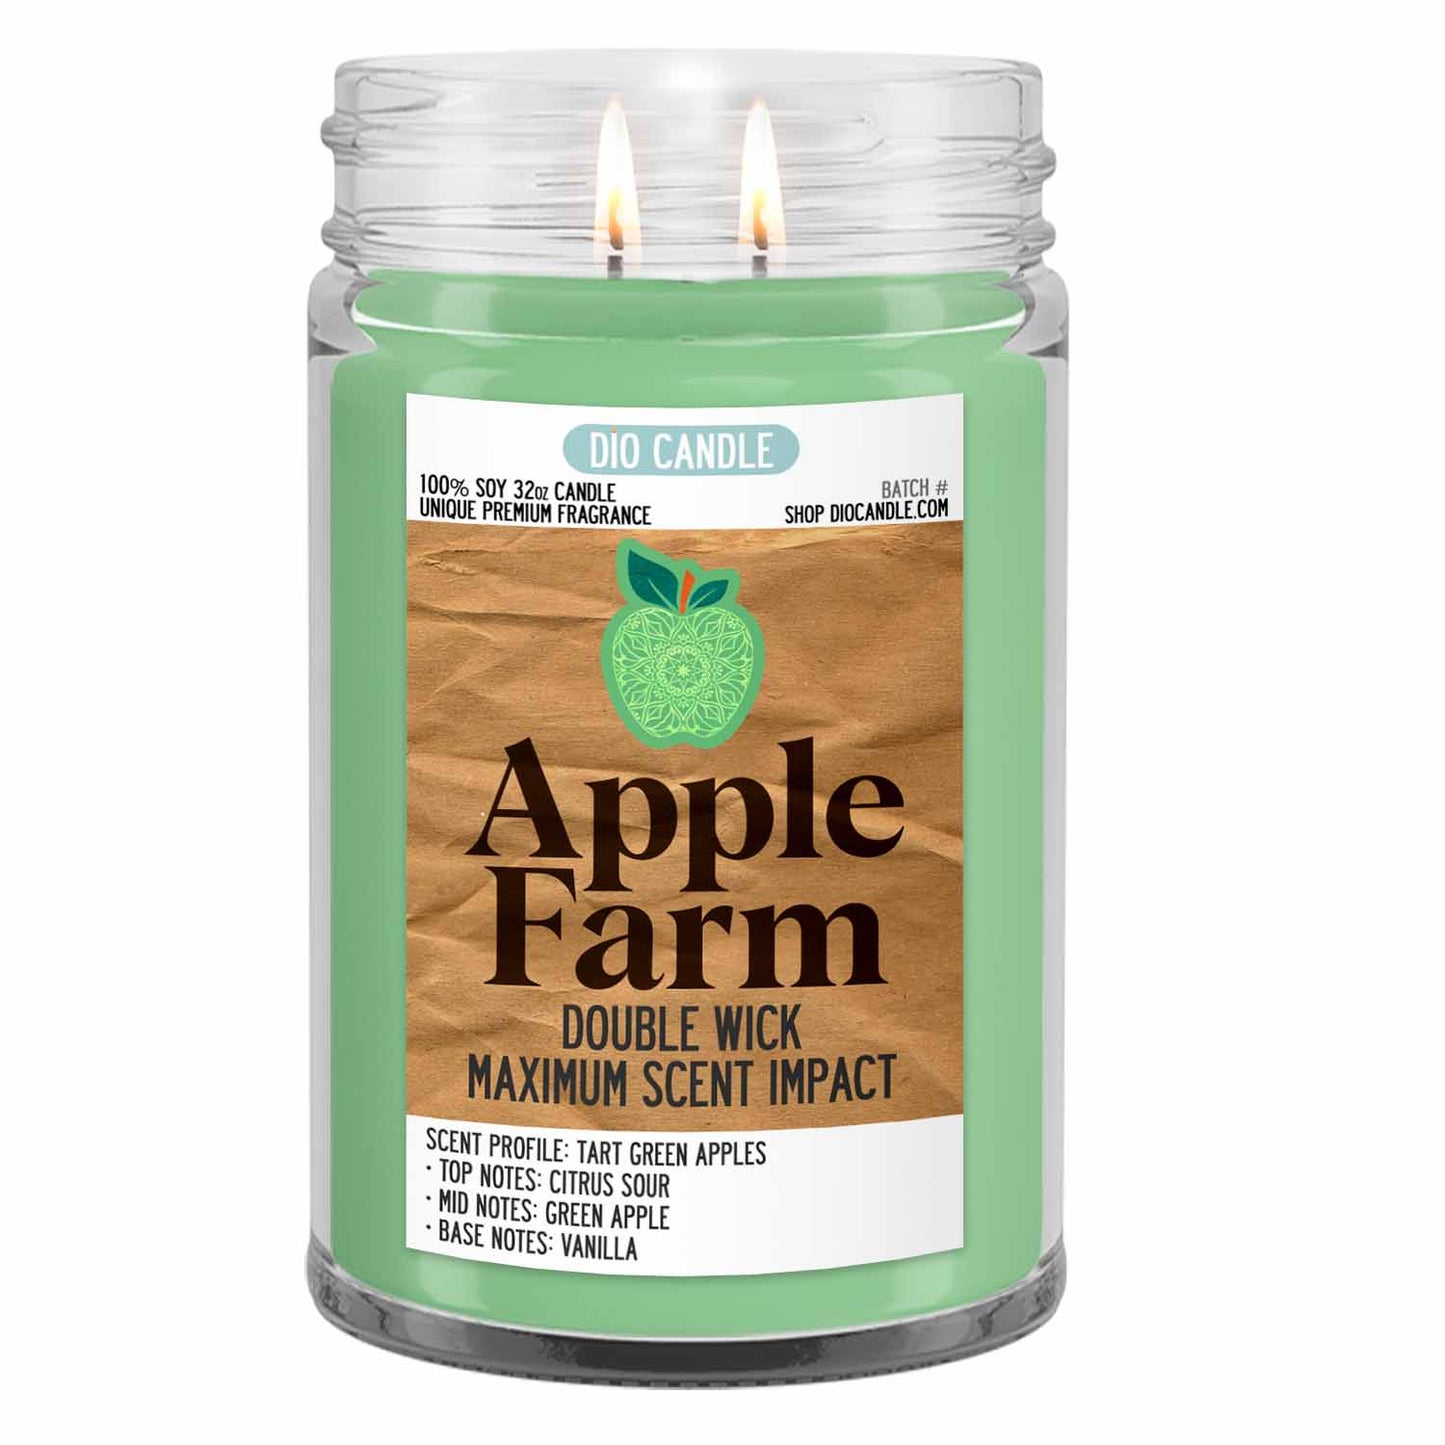 Apple Farm Candle